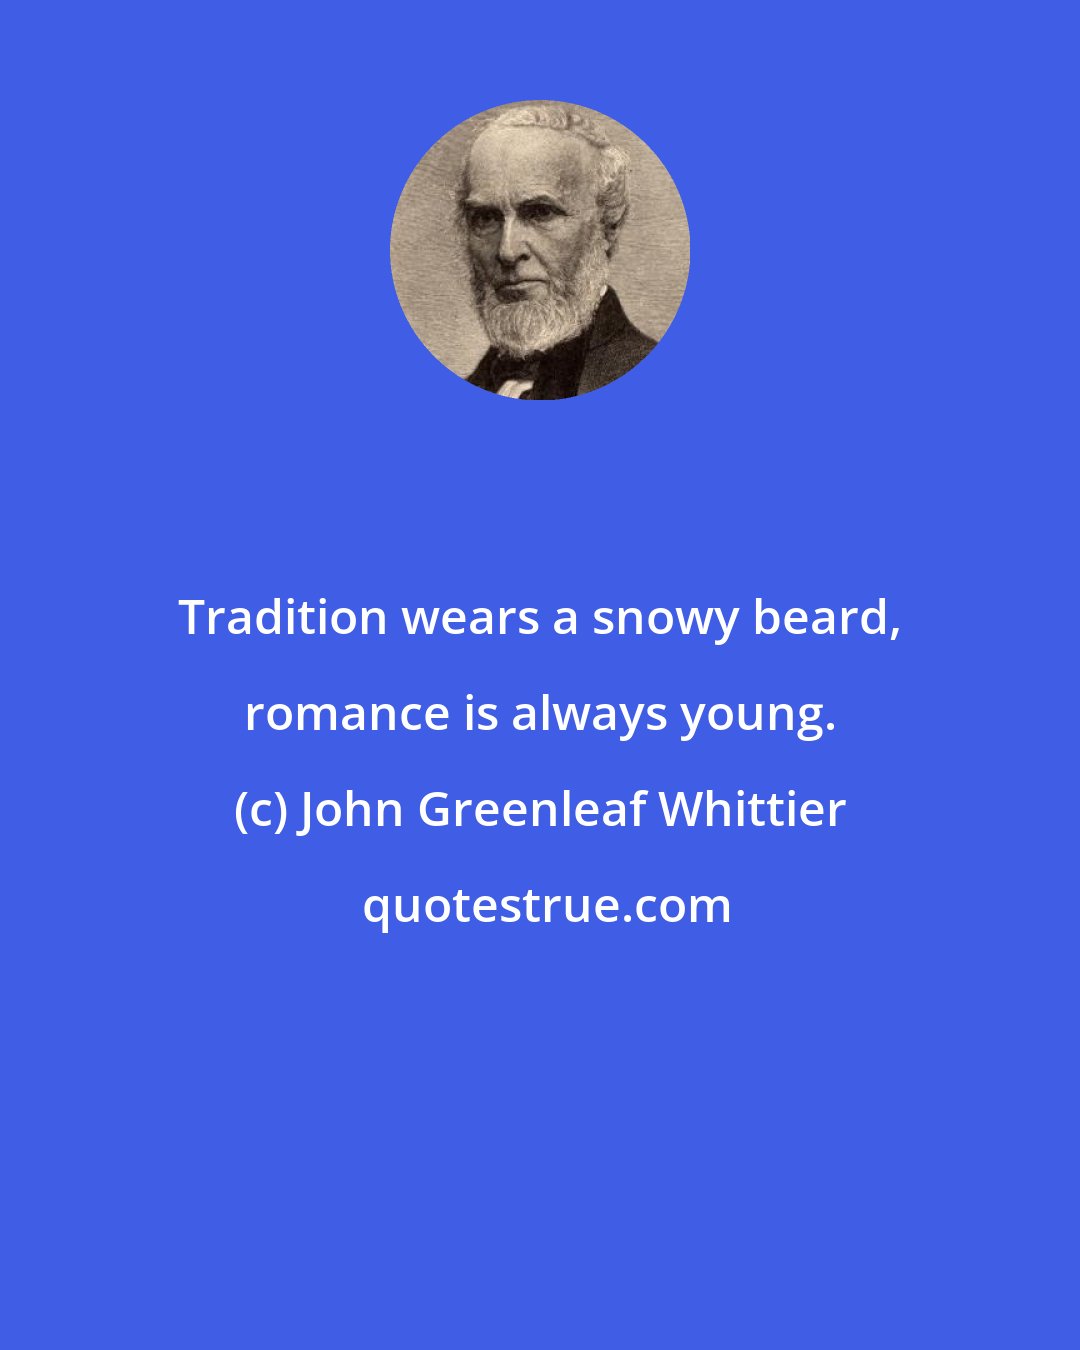 John Greenleaf Whittier: Tradition wears a snowy beard, romance is always young.